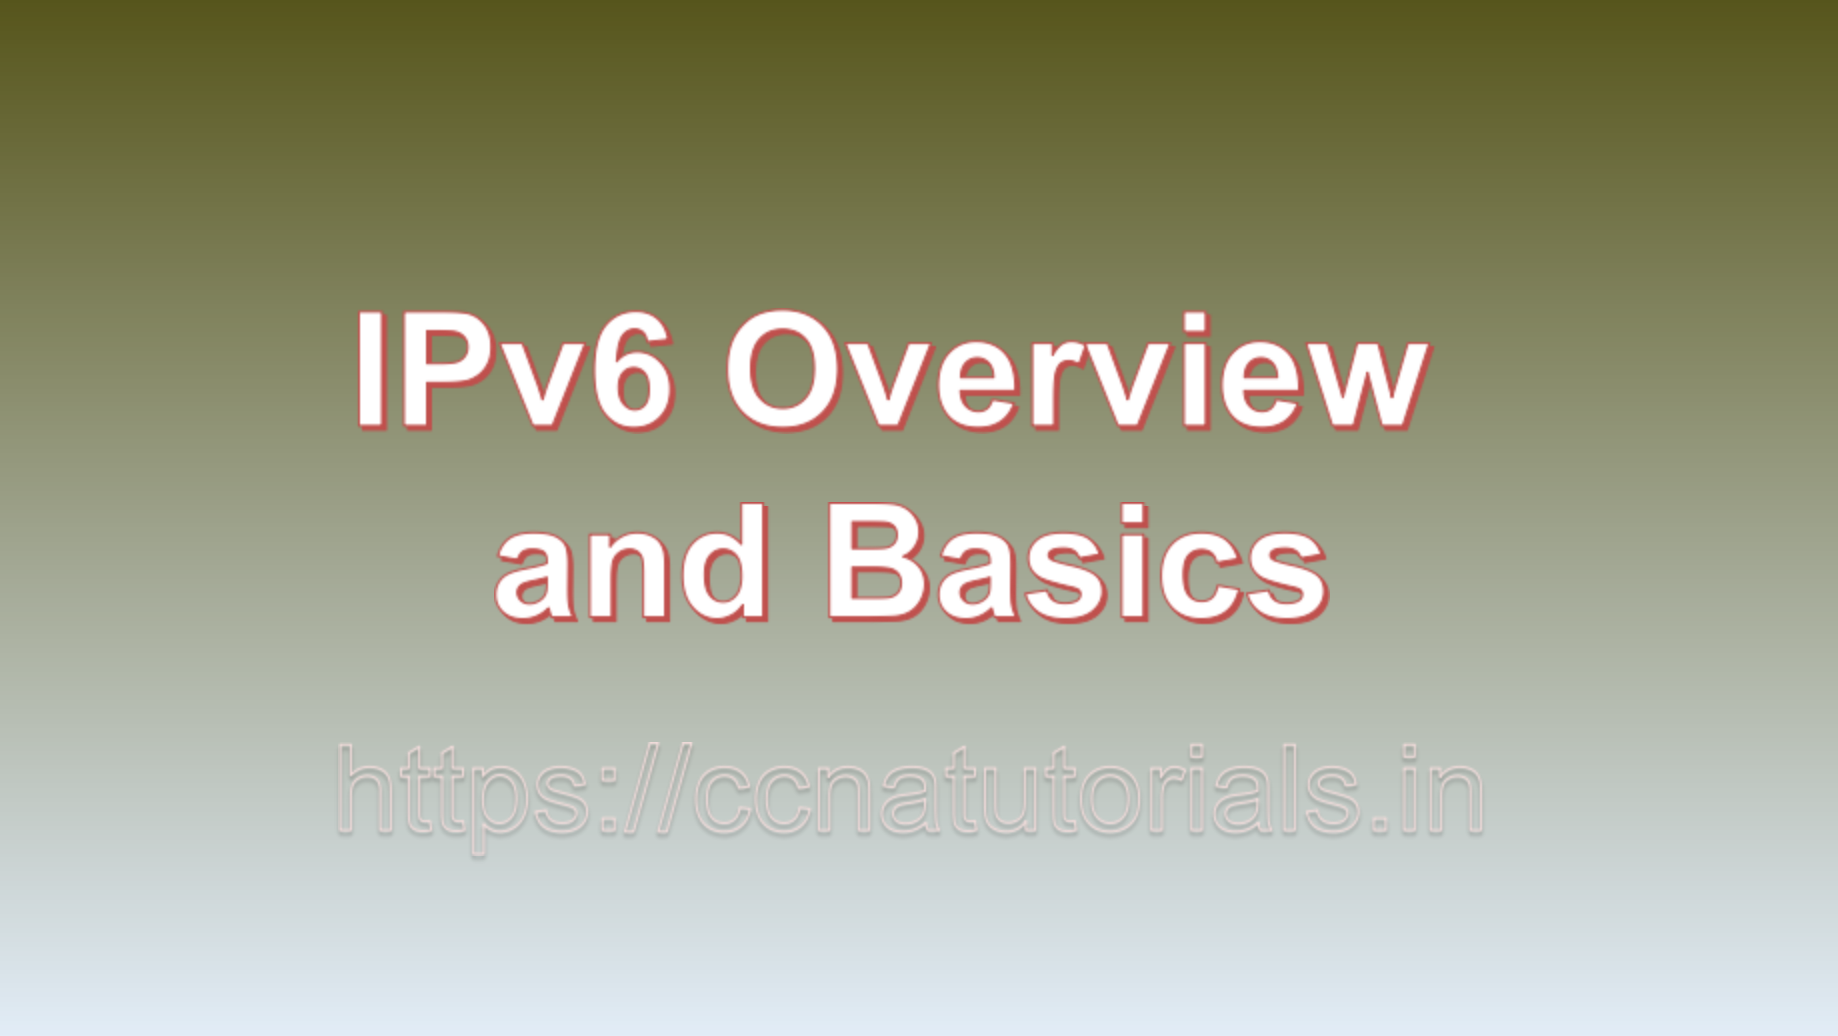 IPv6 Overview and Basics, ipv6, ccna, ccna tutorials